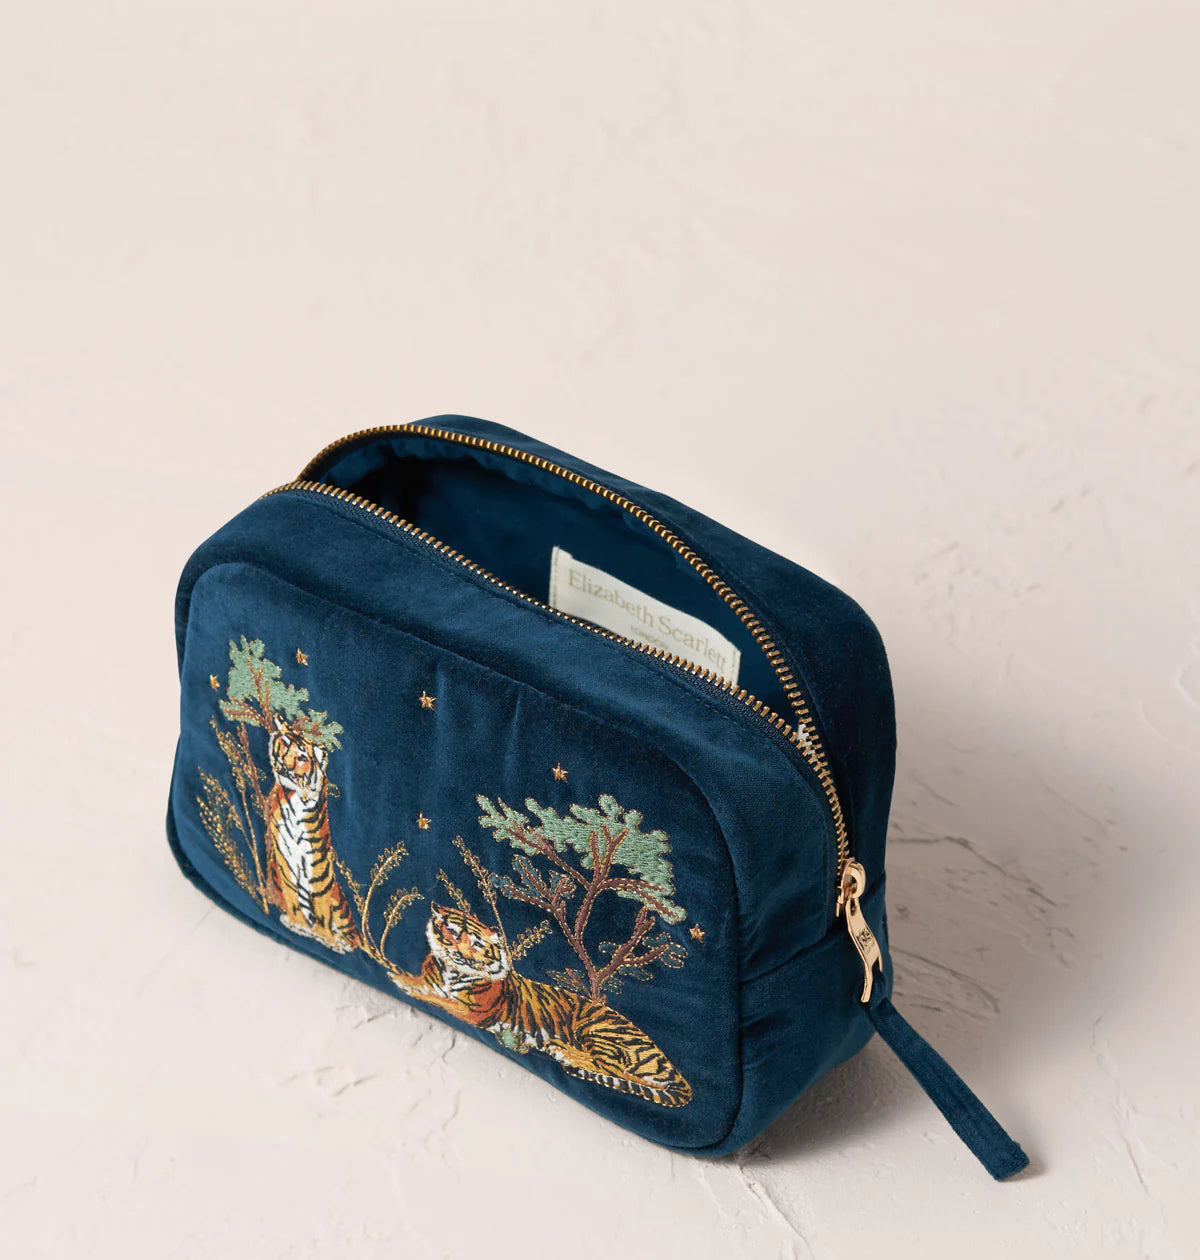 Tiger Conservation Makeup Bag - Ink Blue Velvet